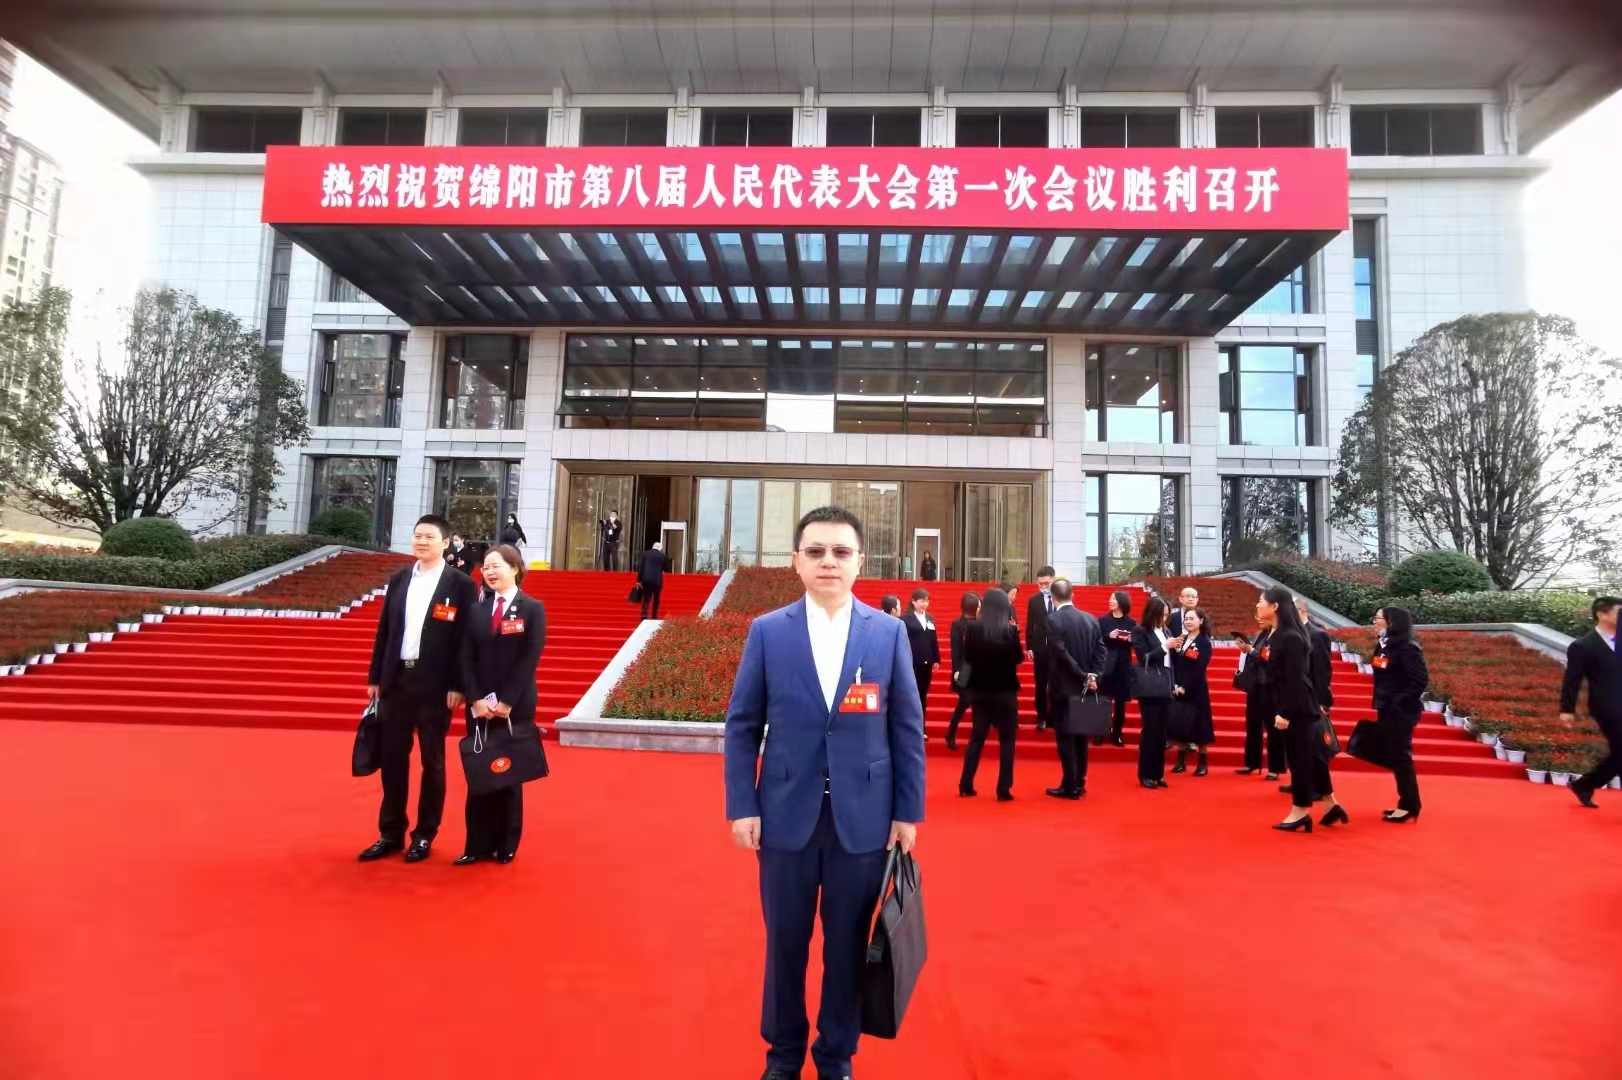 郭晓林当选为政协绵阳市第八届委员会常务委员。